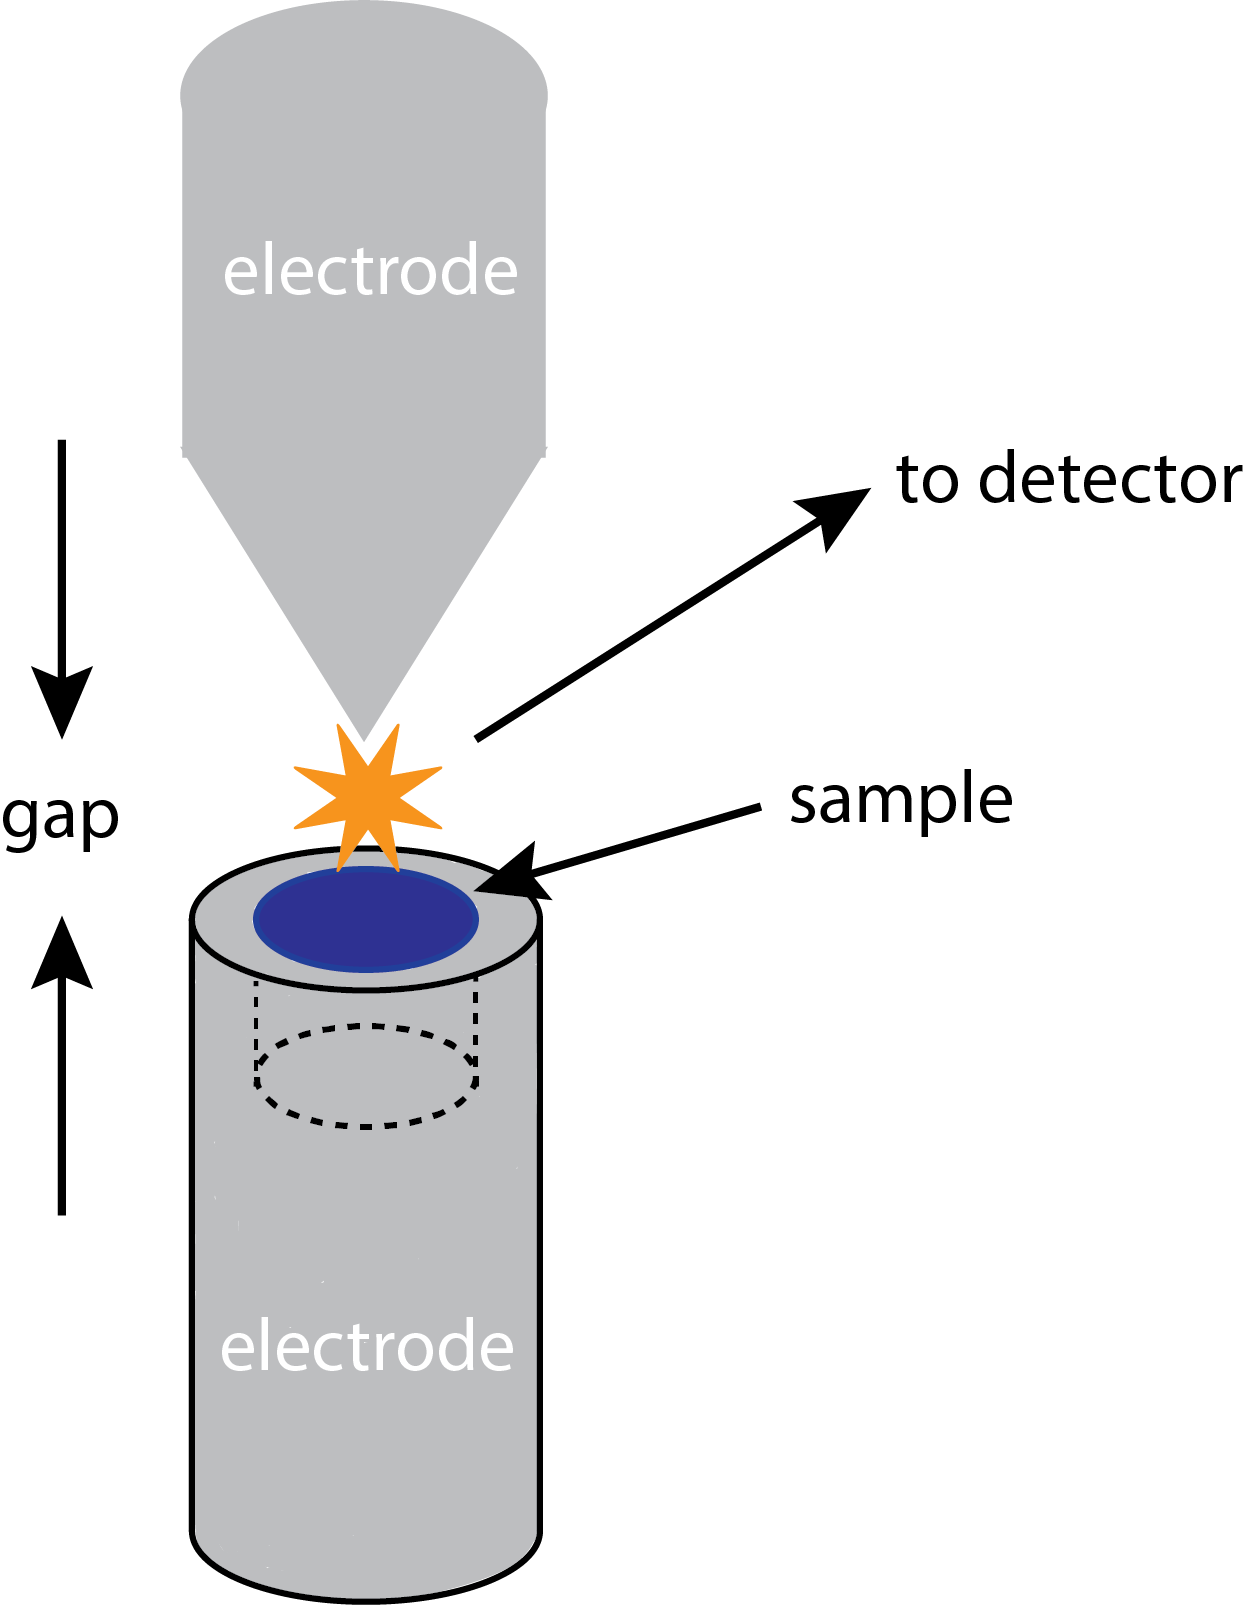 Ejemplo de una fuente de arco en la que los electrodos están conformados a partir de grafito.